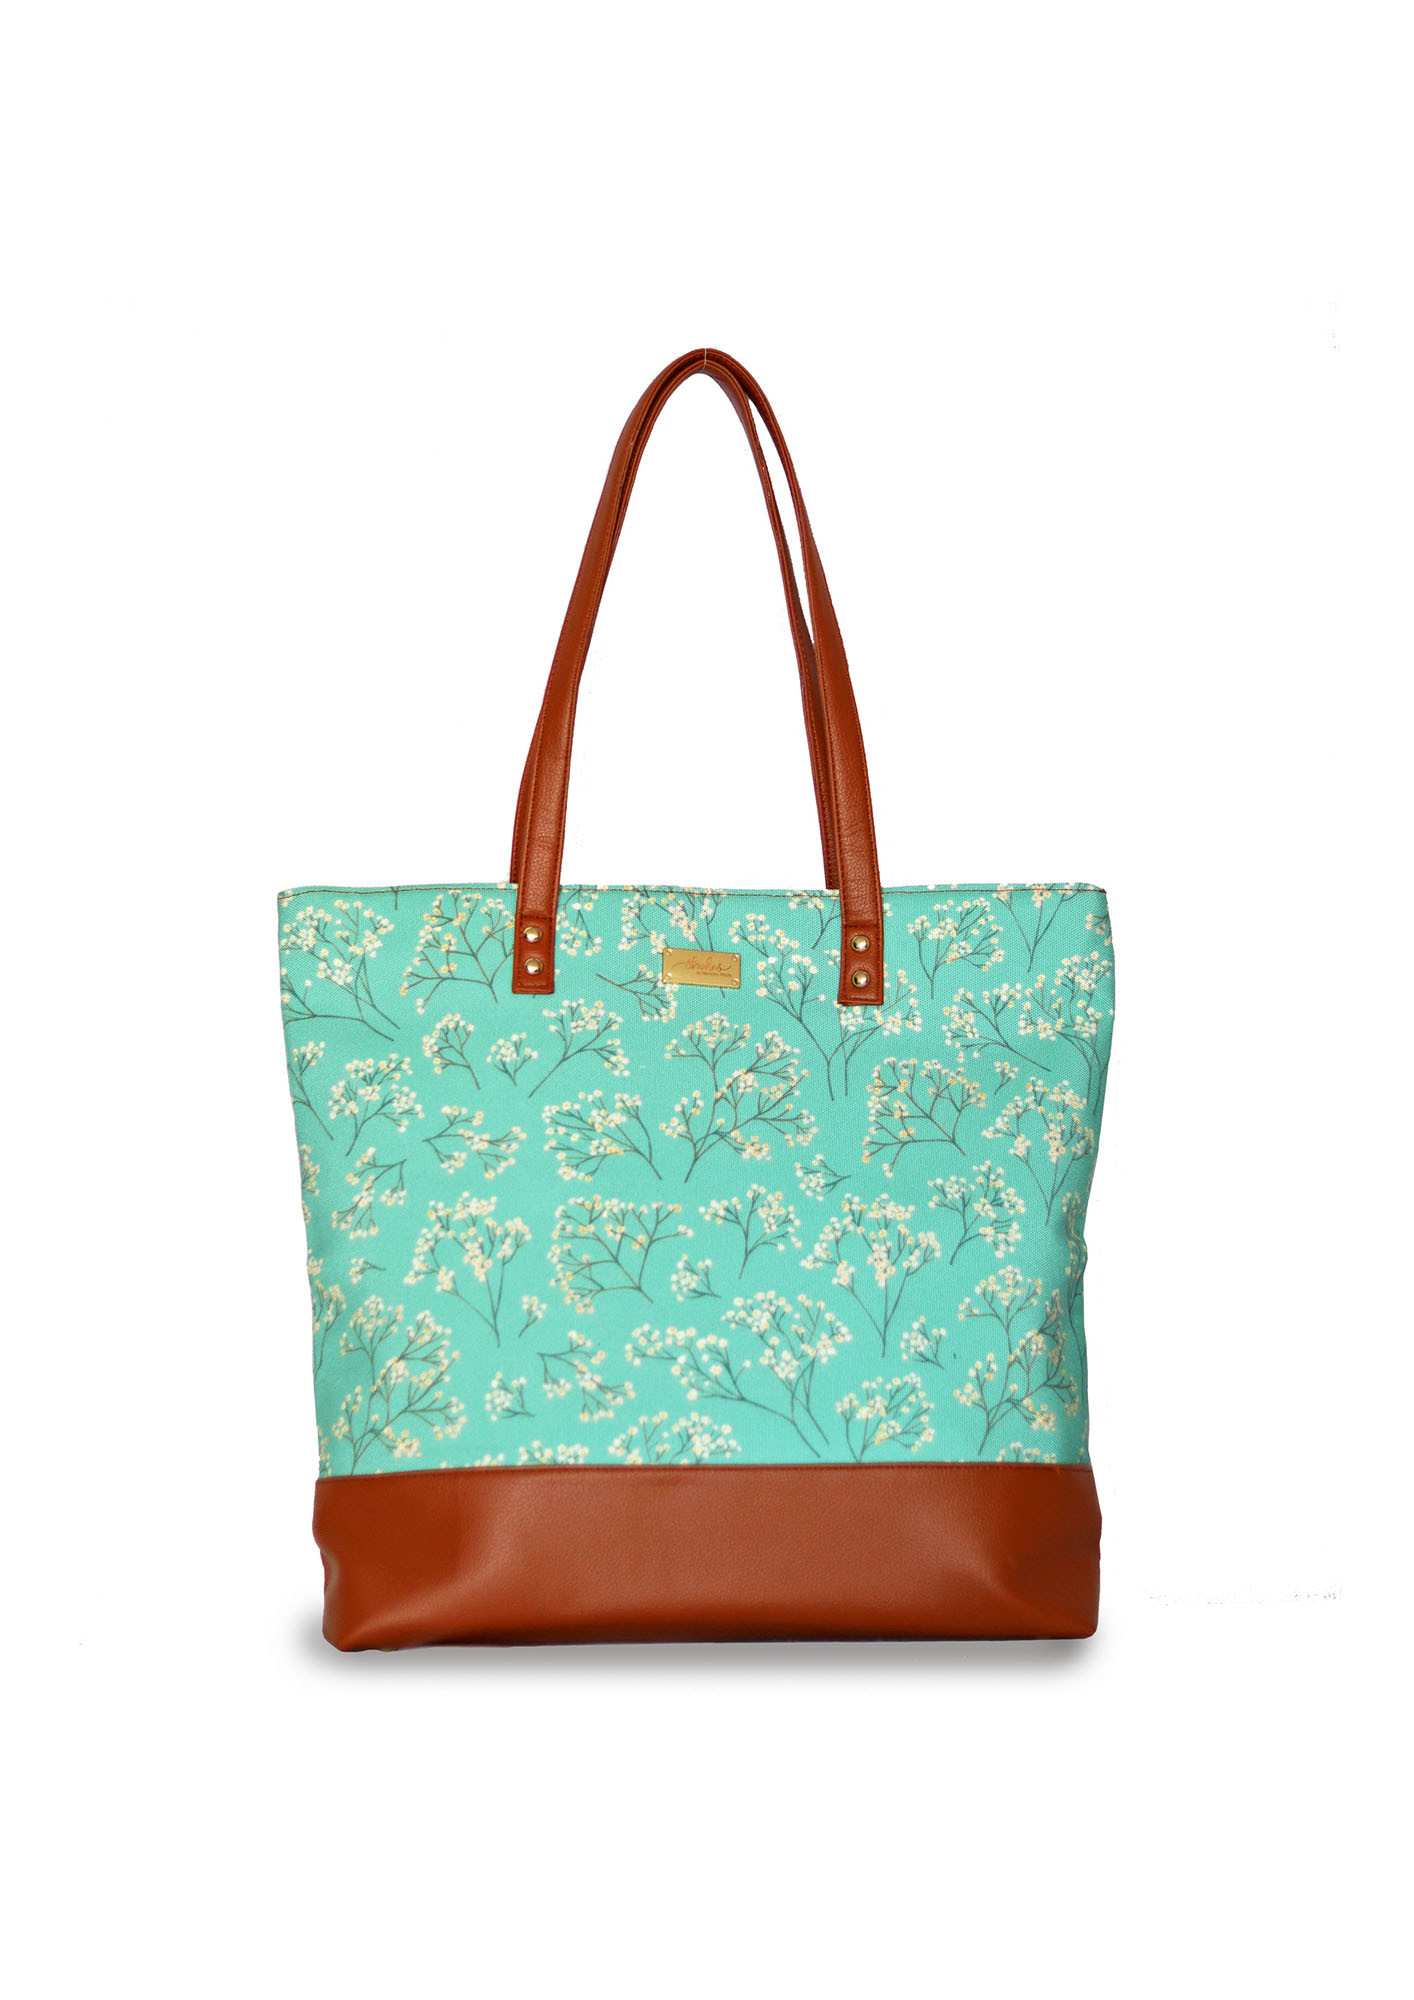 Buy Kate Spade Tote Bags Online In India